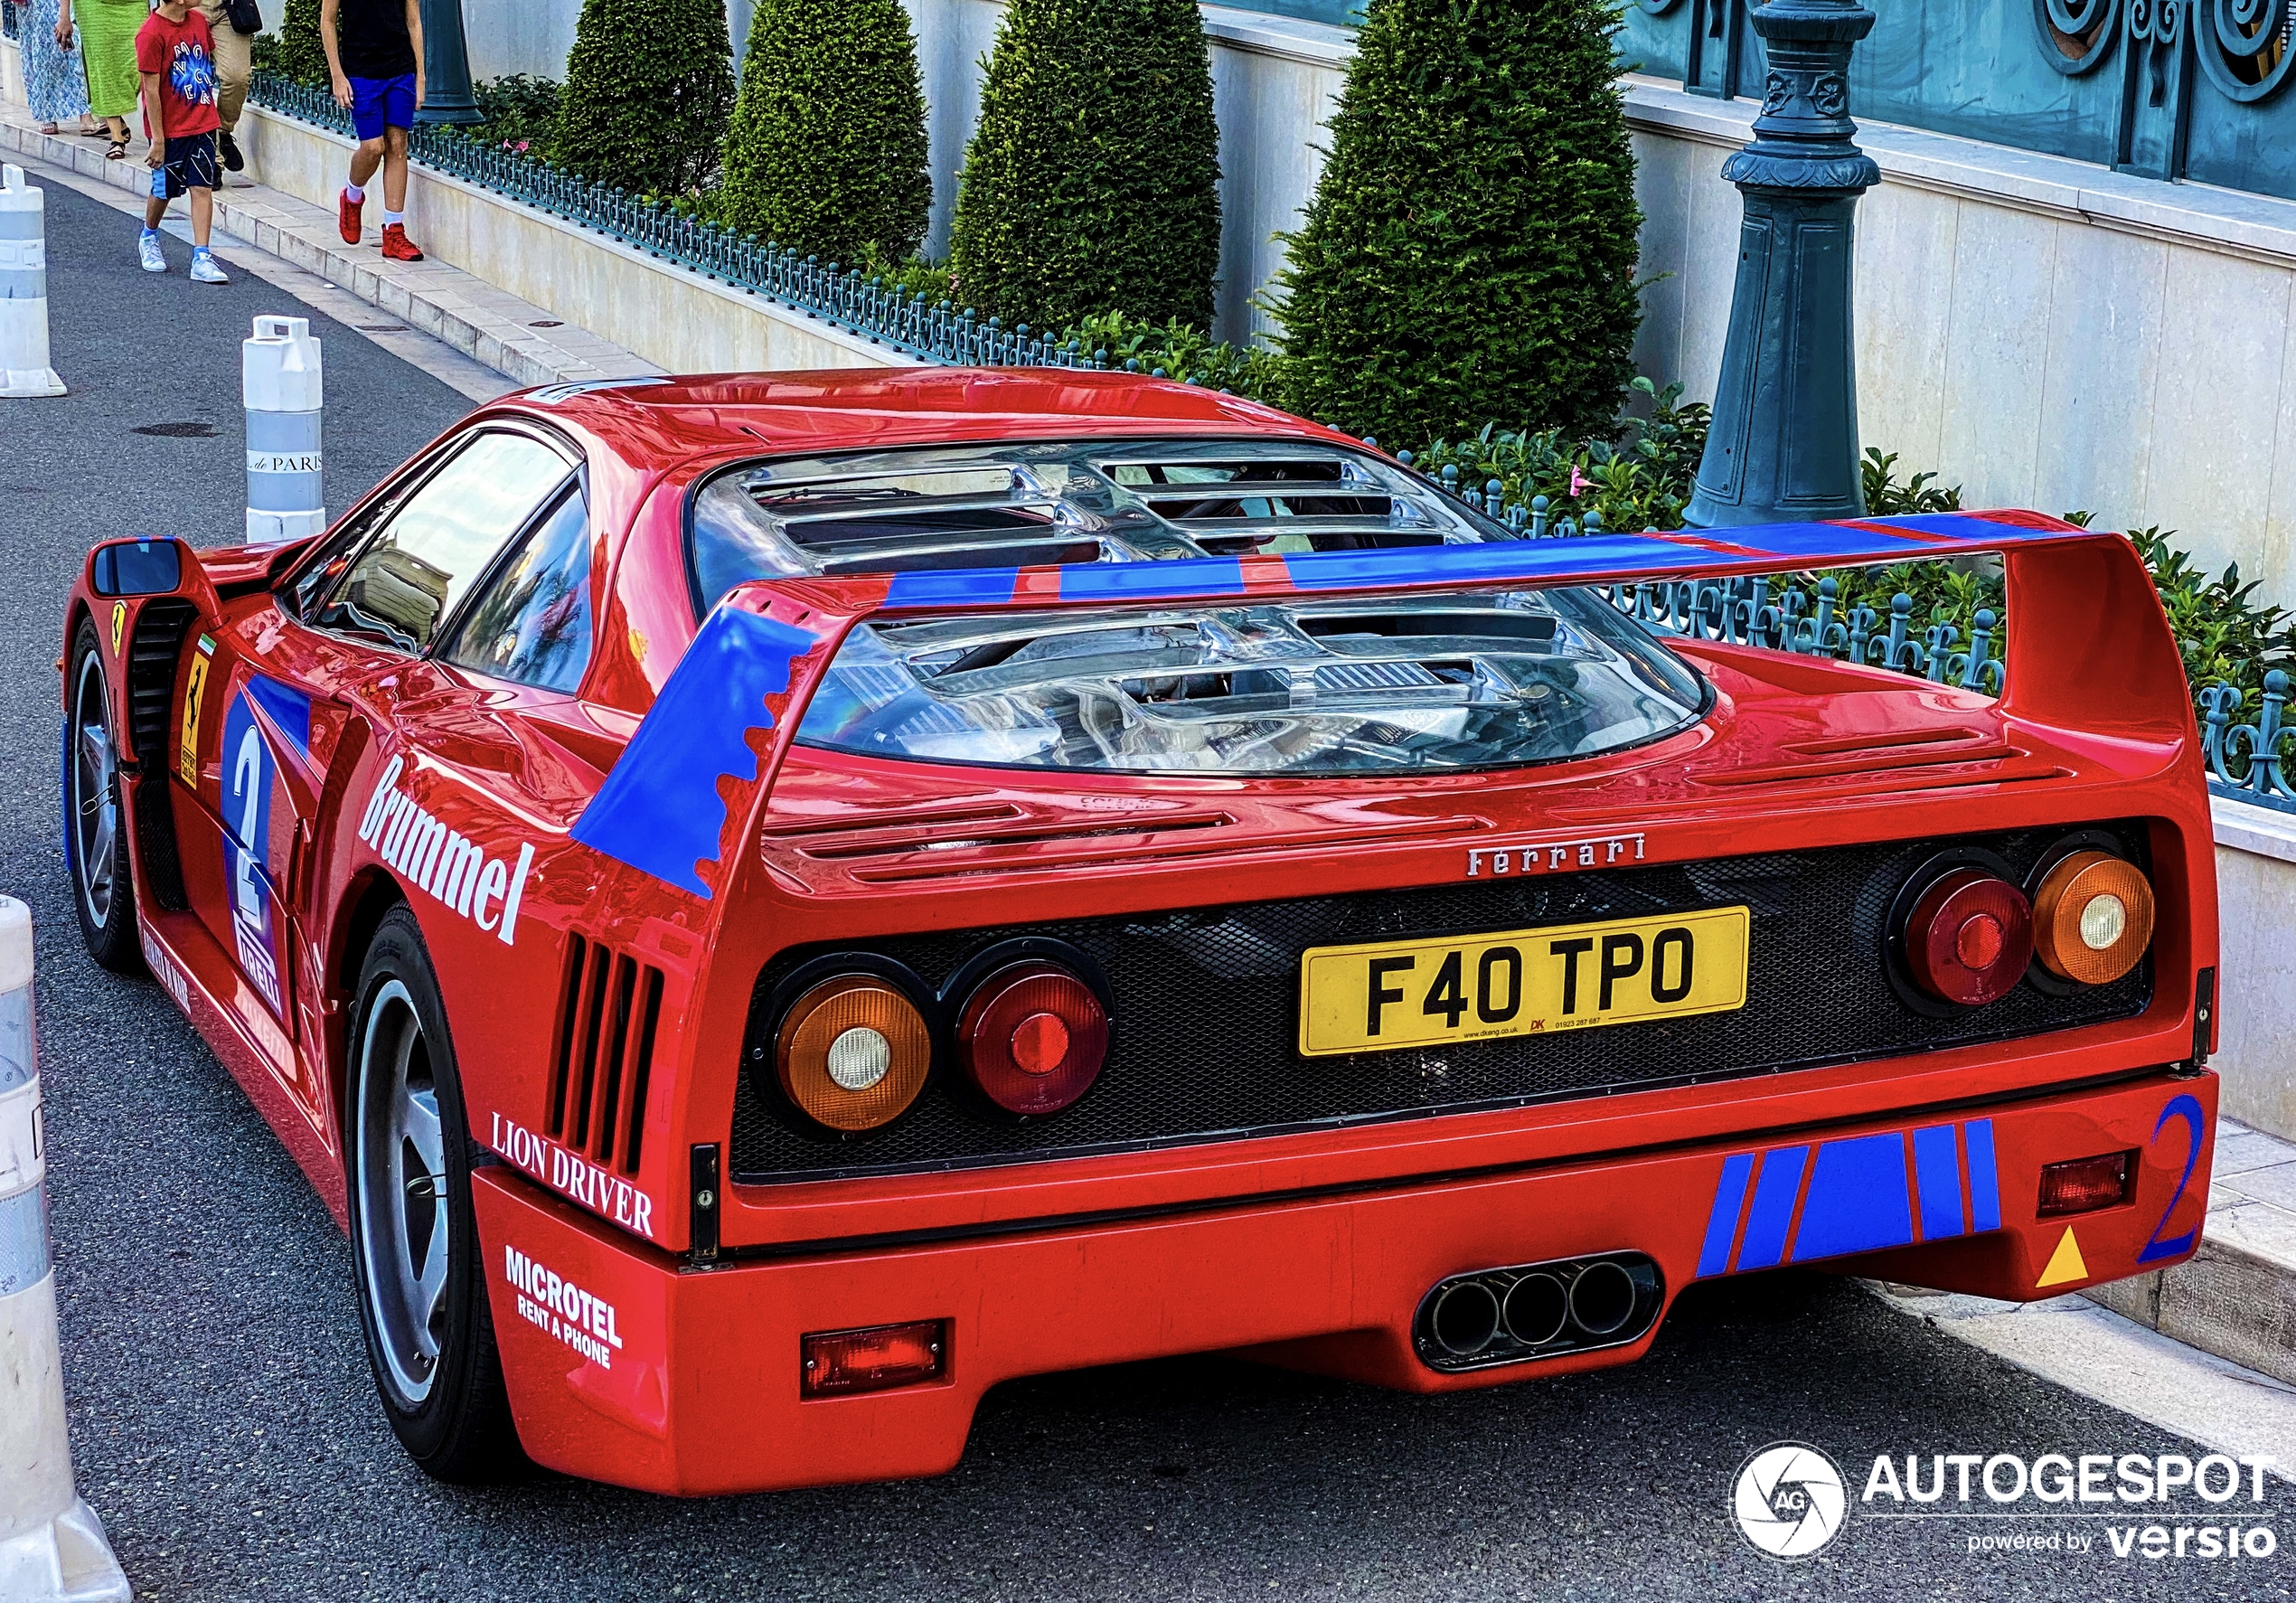 Kende je de Ferrari F40 GT al?